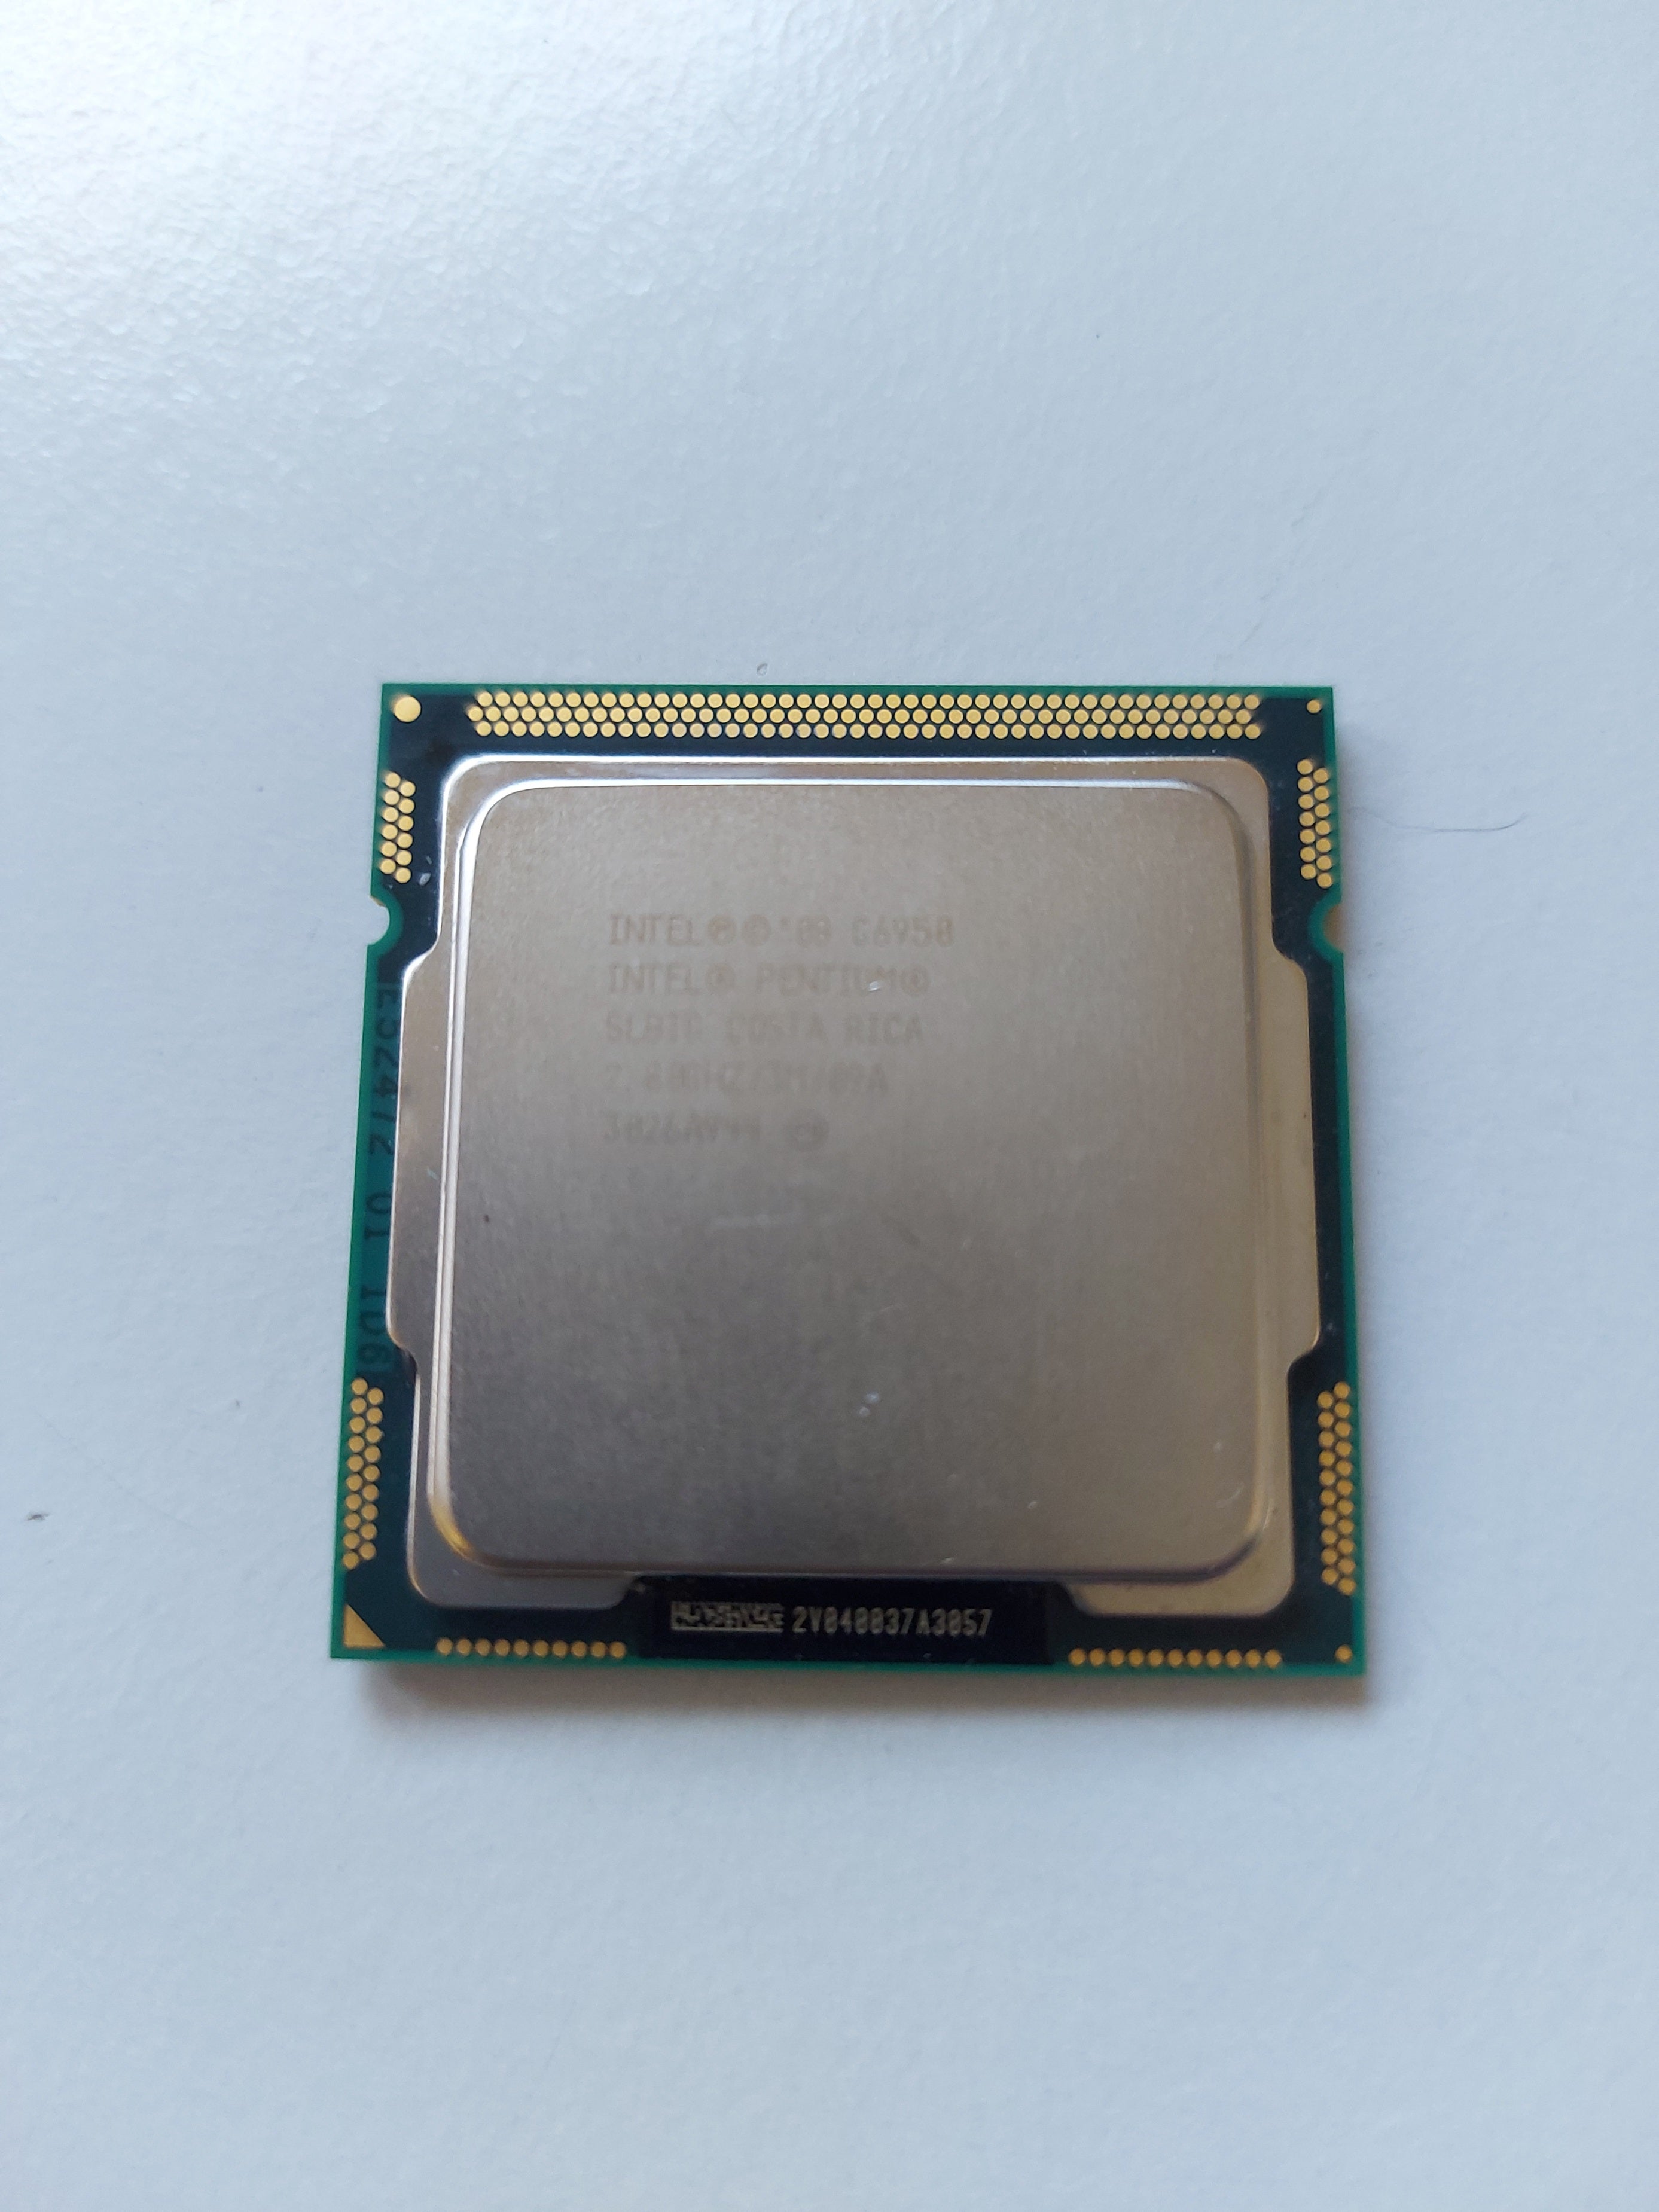 Intel Pentium G6950 Dual Core 2.8GHz LGA1156 CPU Processor ( SLBTG ) USED